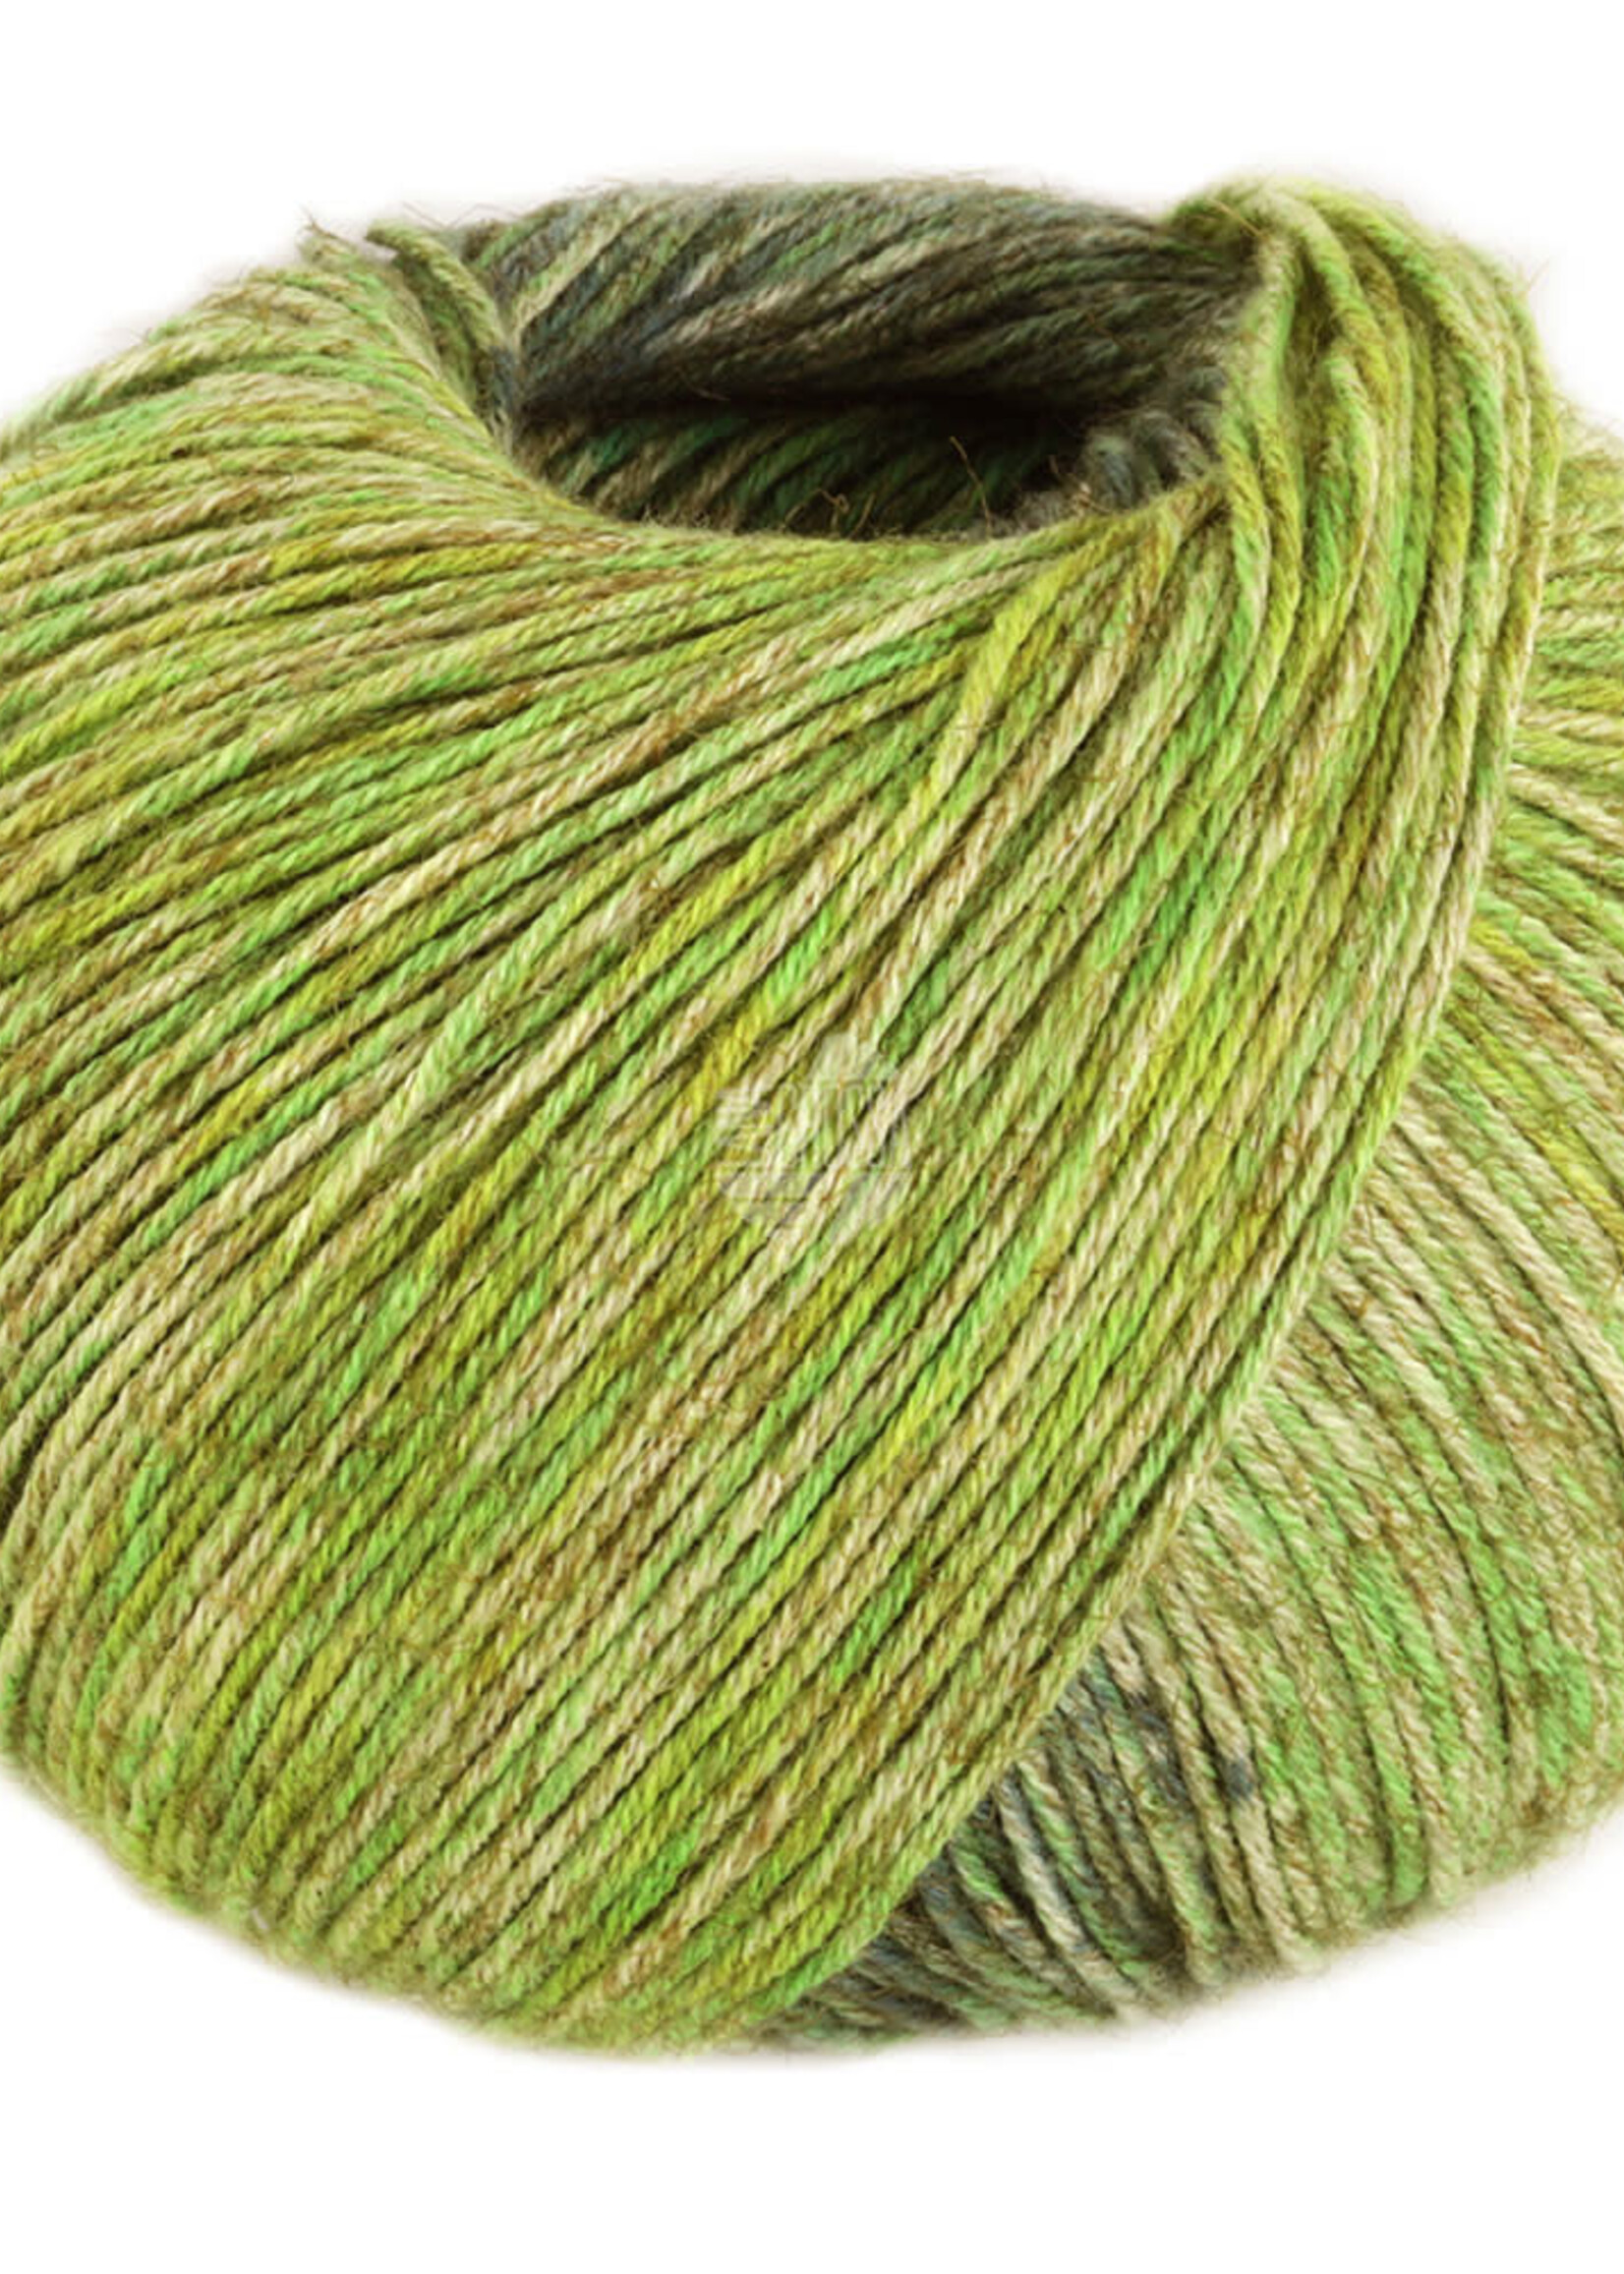 Lana Grossa Diversa Print - Lana Grossa -107 olijf/groen/geelgroen/bos groen/grijs groen